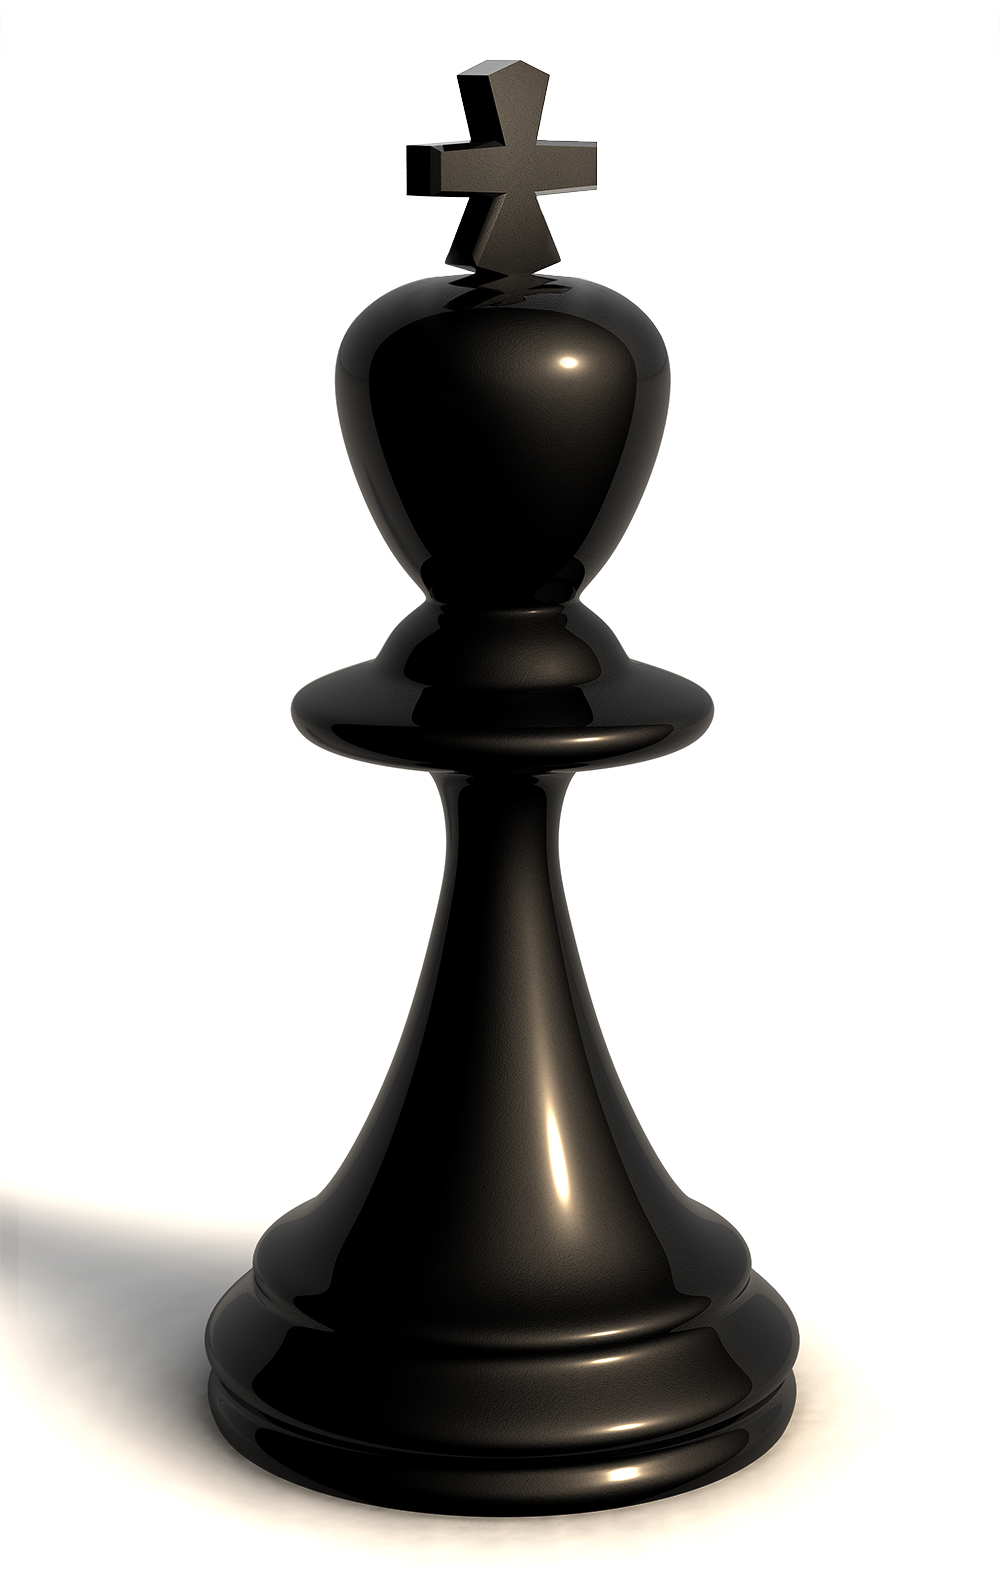 Black Chess King